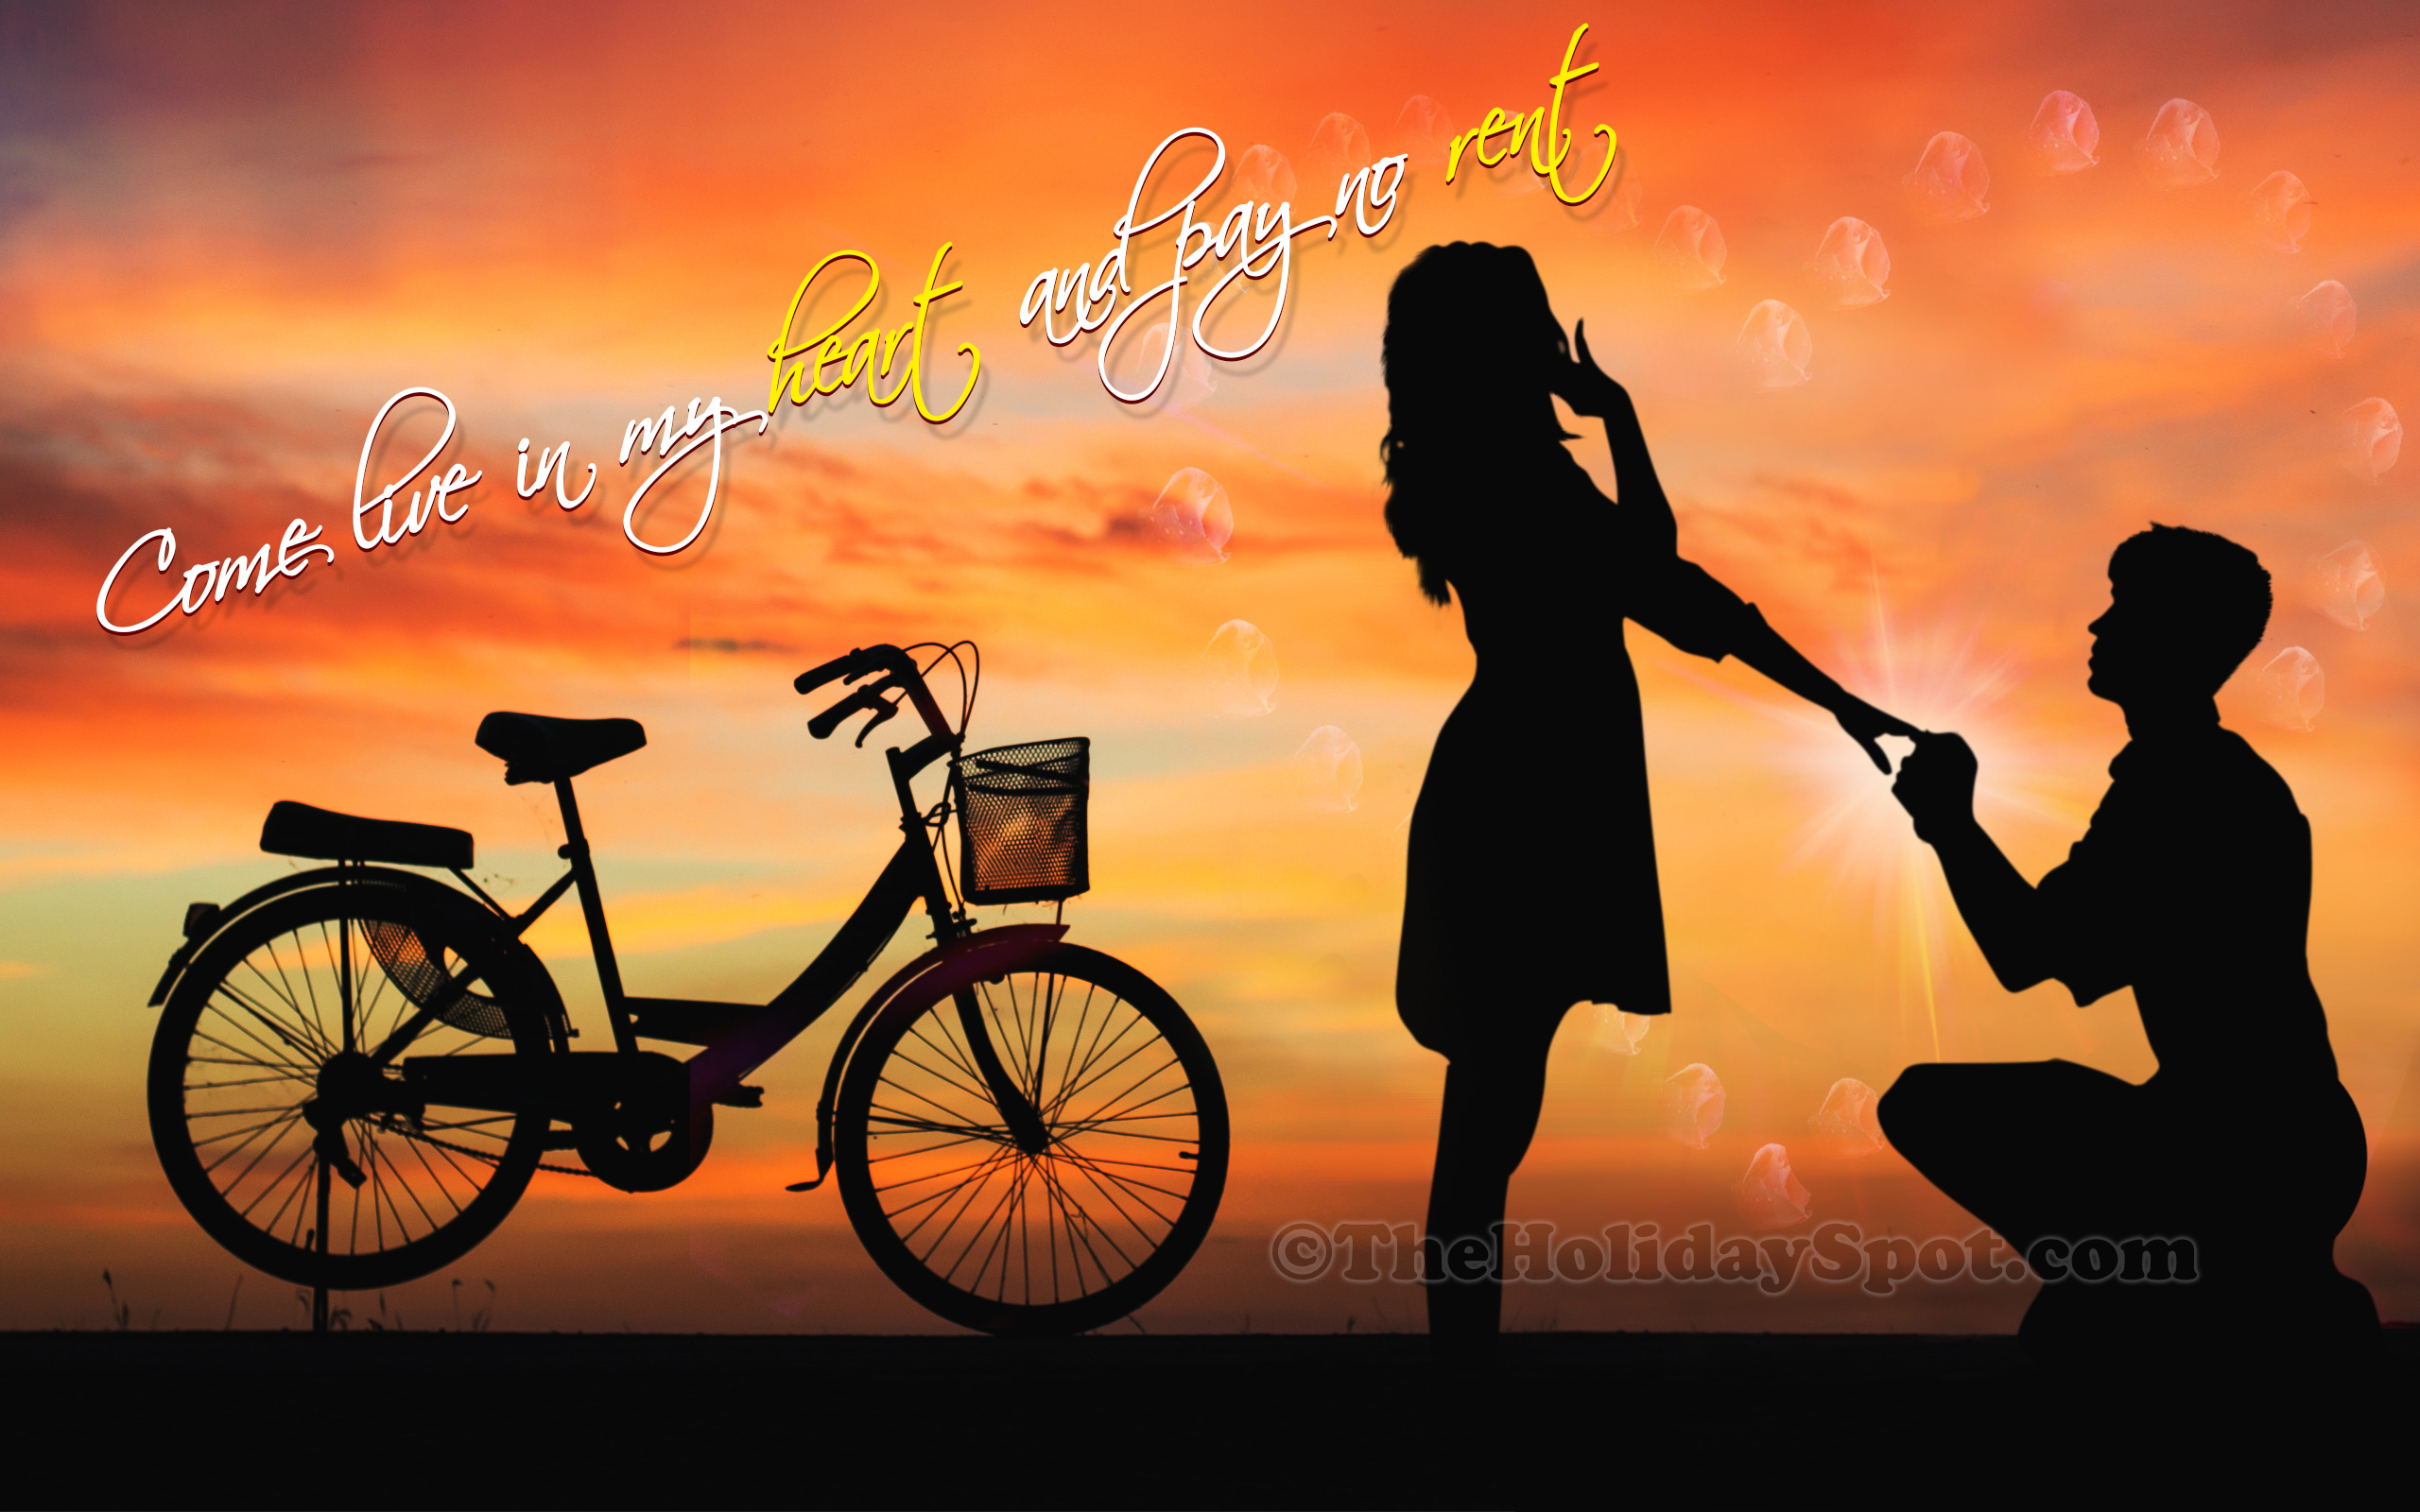 foto wallpaper,amicizia,cielo,veicolo,bicicletta,sera